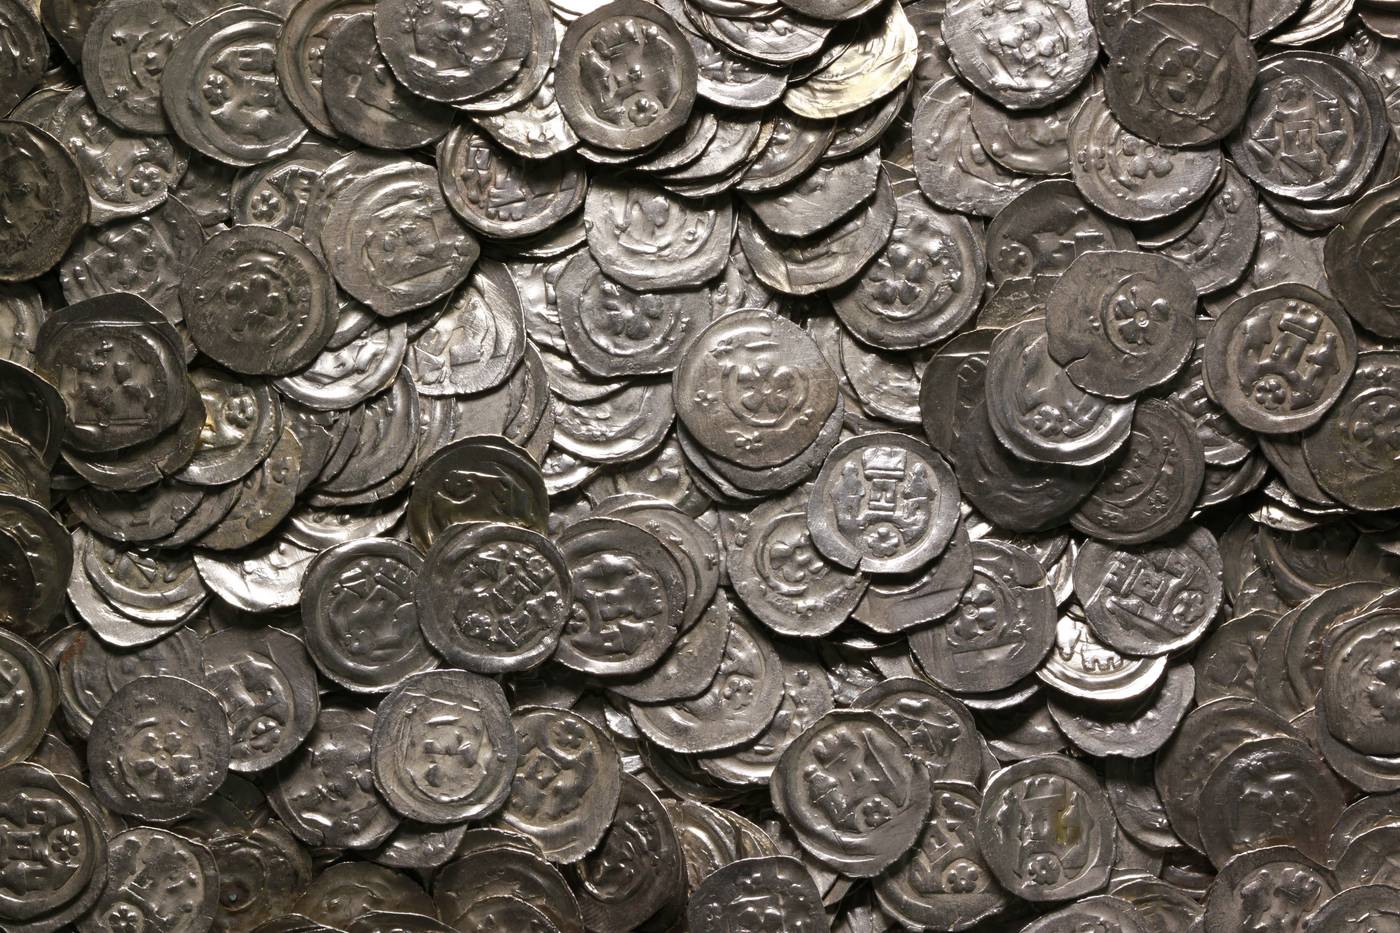 Münzschatz aus der Judengasse 10, Salzburg, um 1290, Inv.-Nr. MÜ 40375: Circa 28.343 Silberpfennige – wohl der umfangreichste, noch erhaltene Münzschatz Österreichs